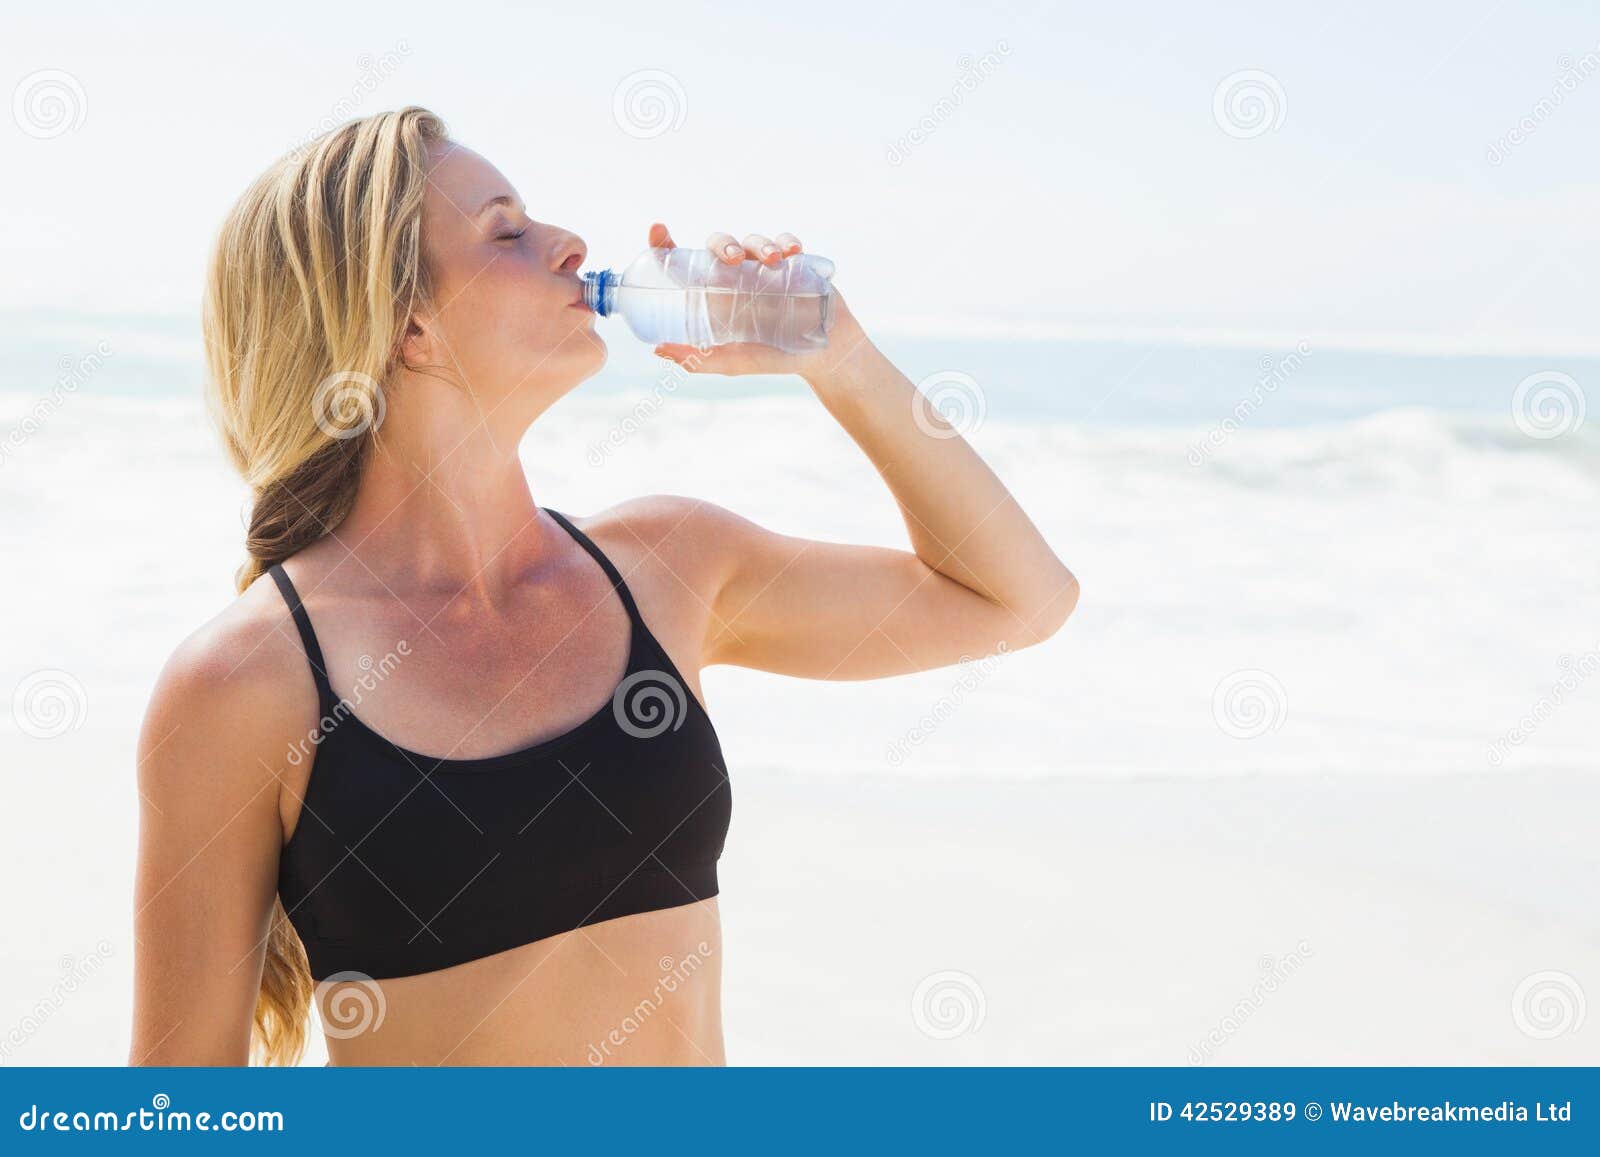 Blonde drink. Пить воду на пляже. Девушка пьет воду на пляже. Спортивная девушка в очках пьет воду. Beautiful woman drinking Drink on the Beach.